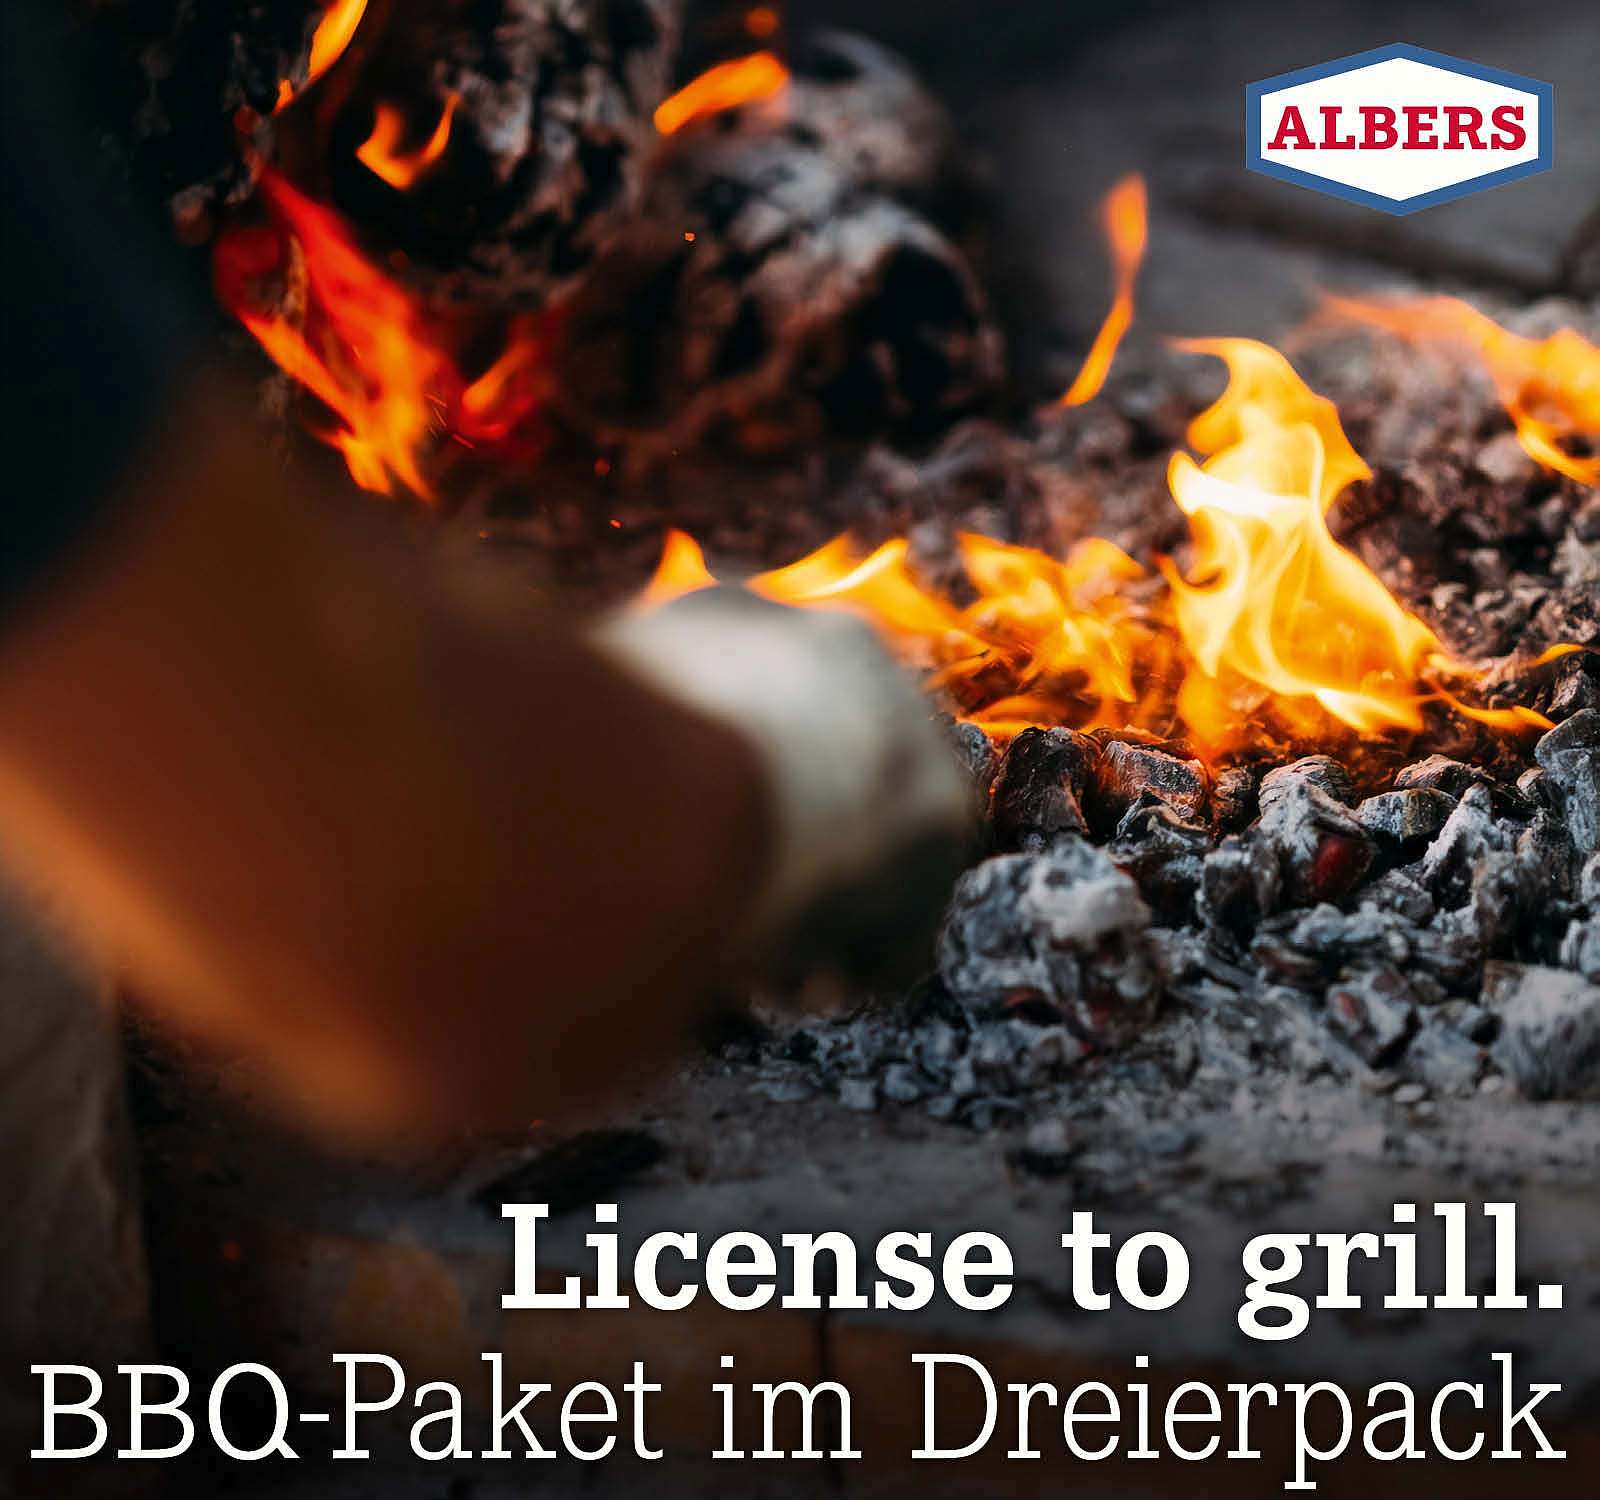 License to grill. BBQ-Paket im Dreierpack